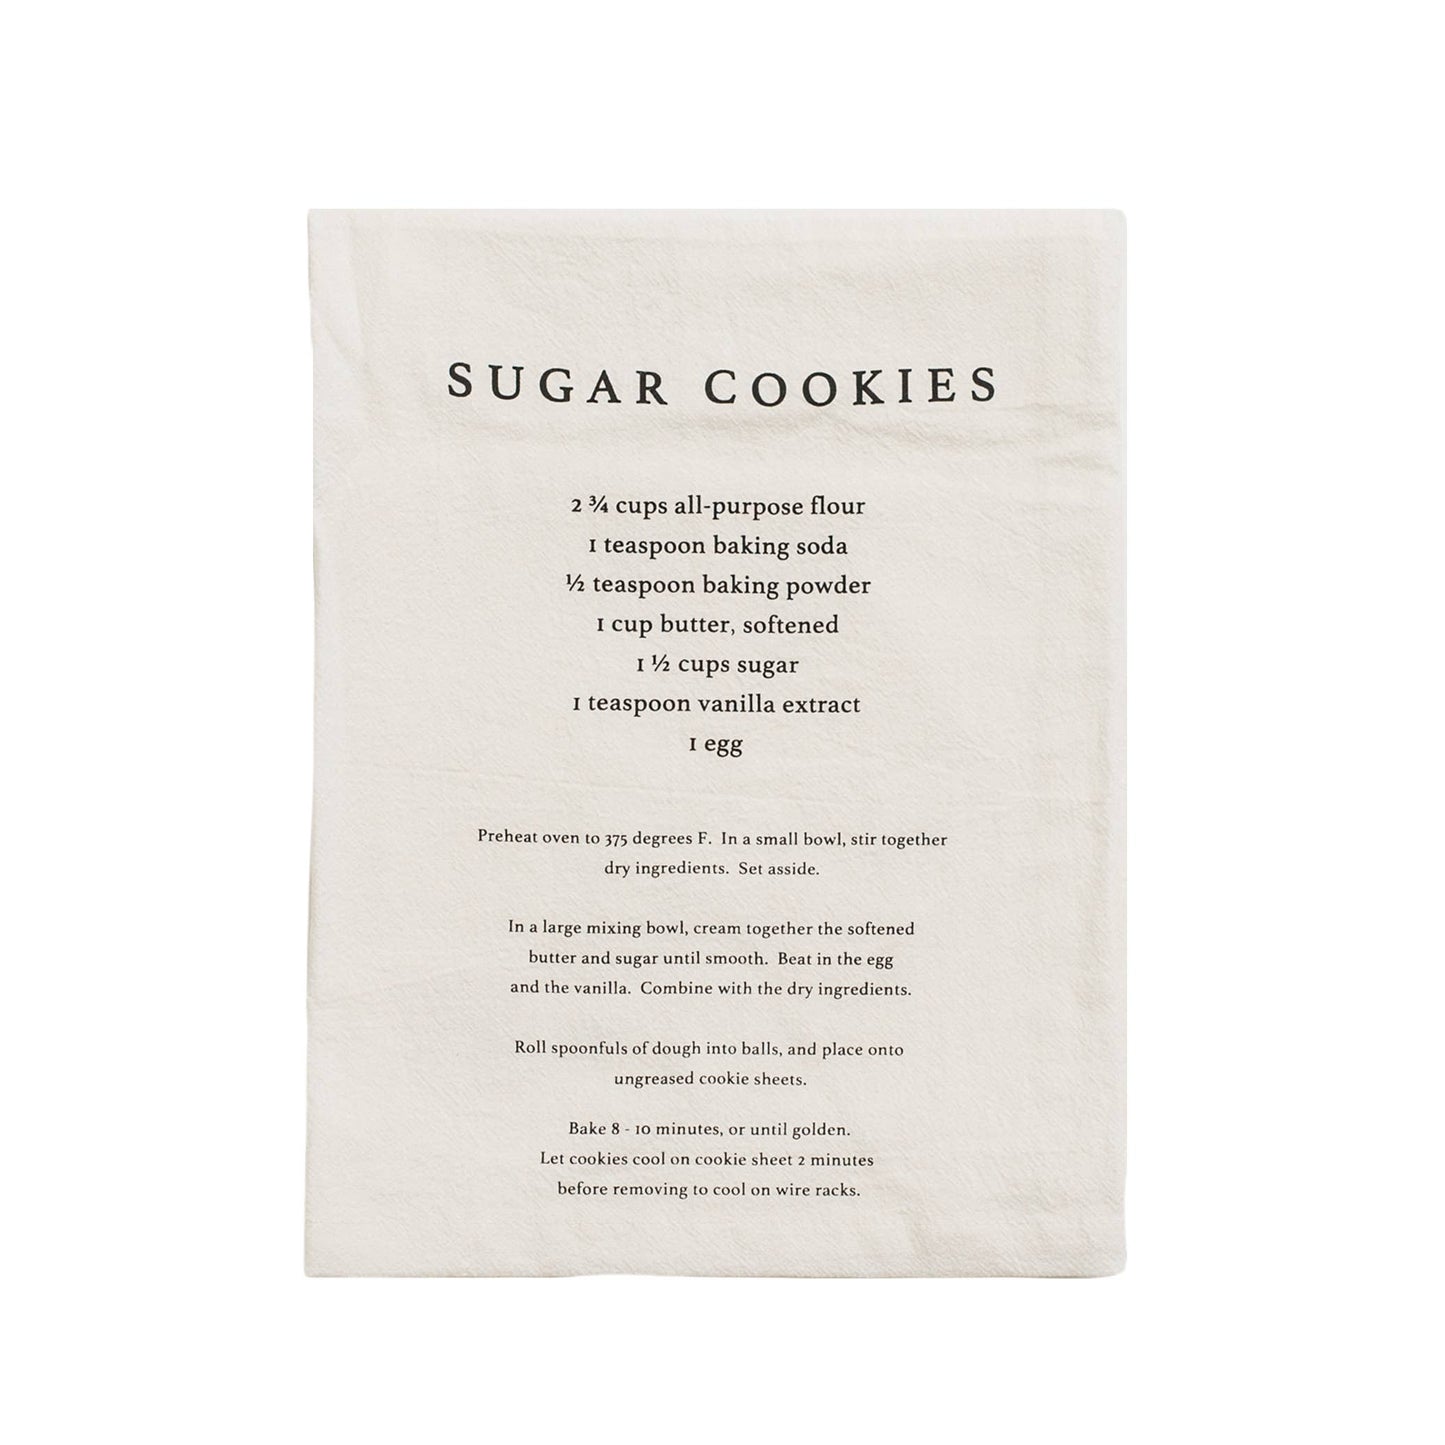 Sugar Cookies Tea Towel - Christmas Home Decor & Gifts